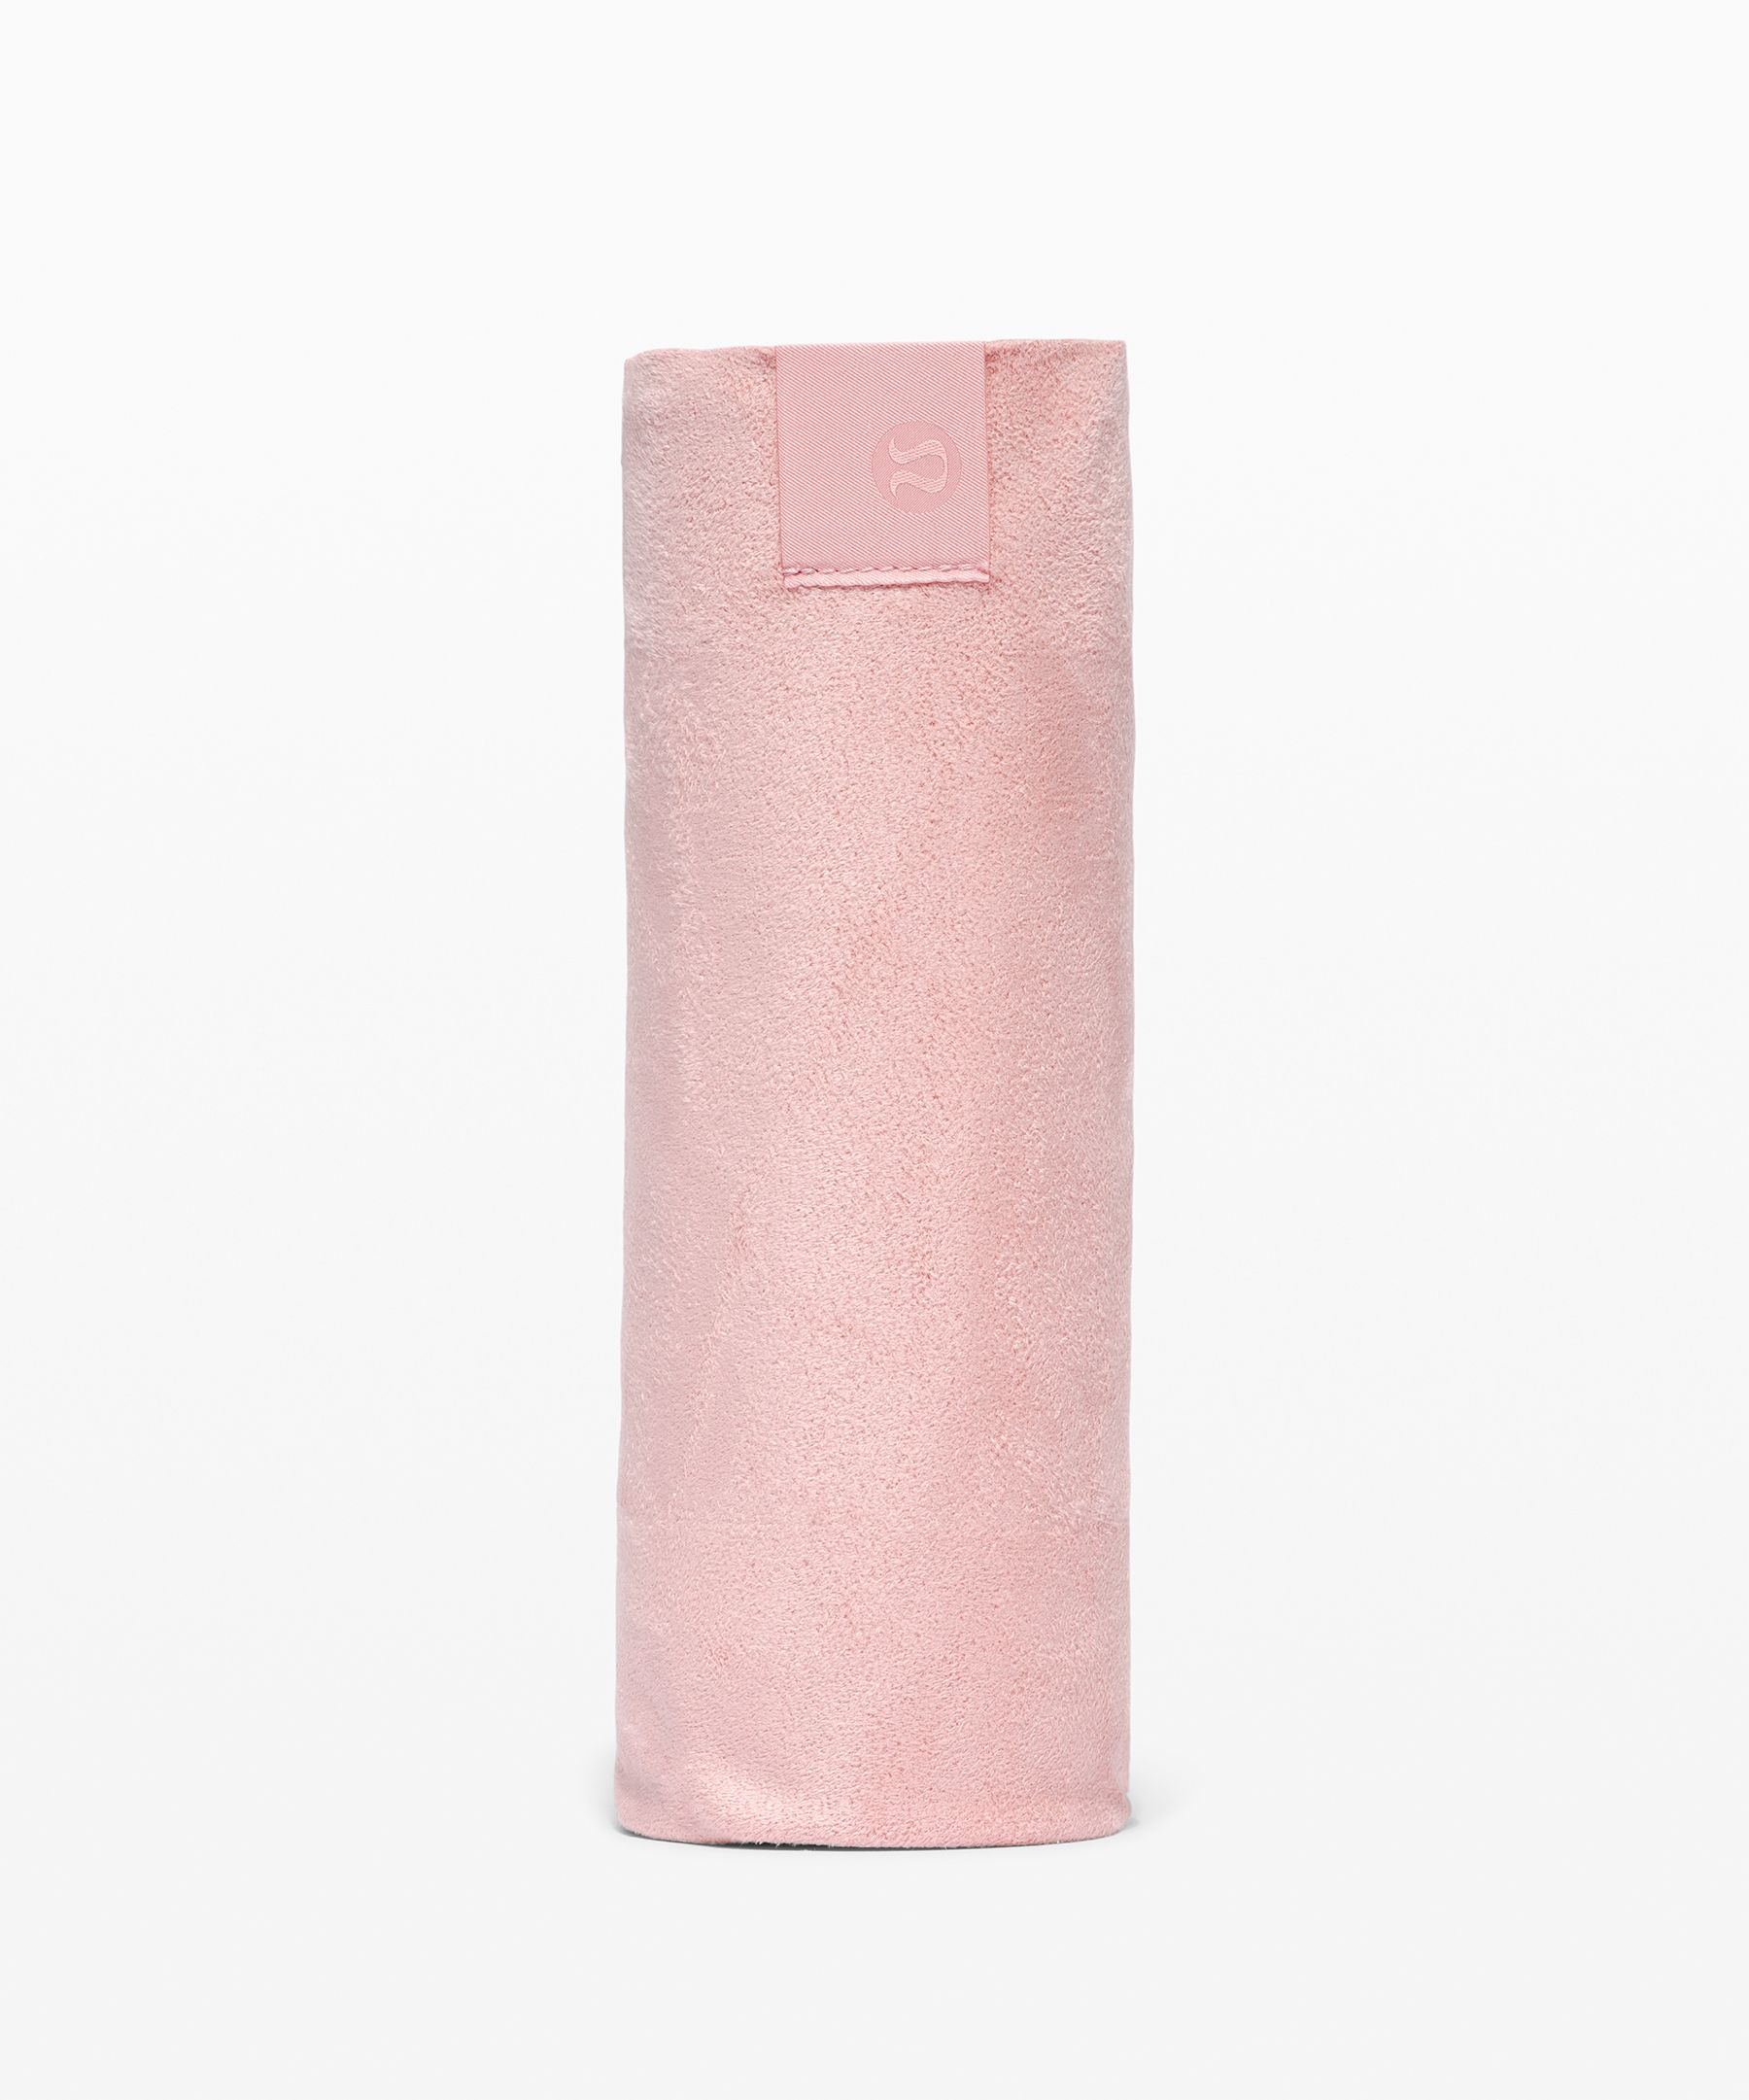 Lululemon The Towel In Pink